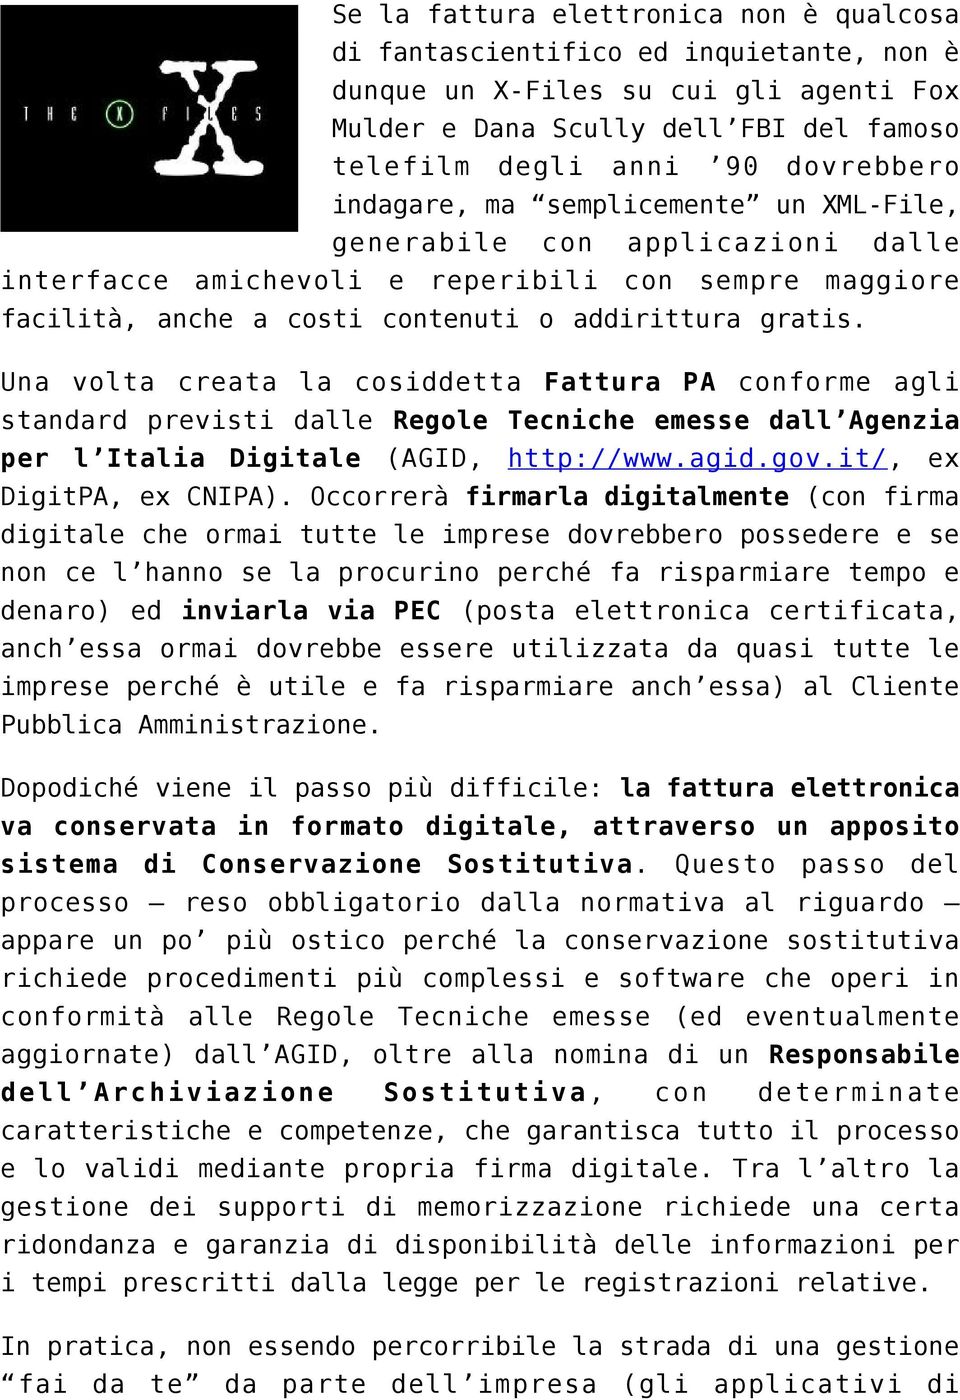 Una volta creata la cosiddetta Fattura PA conforme agli standard previsti dalle Regole Tecniche emesse dall Agenzia per l Italia Digitale (AGID, http://www.agid.gov.it/, ex DigitPA, ex CNIPA).